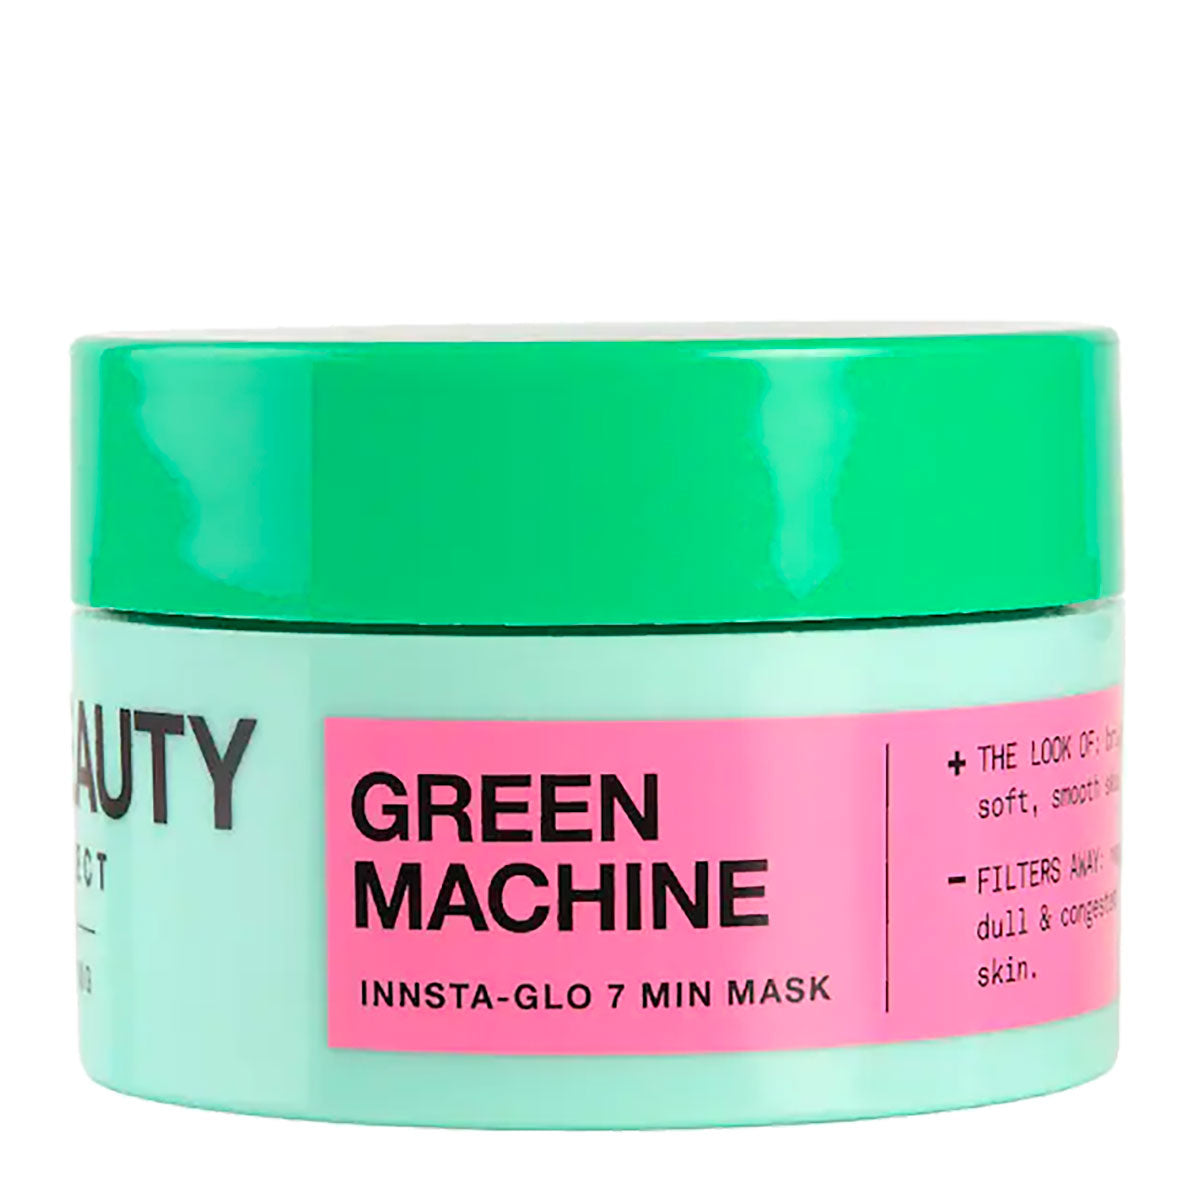 iNNBEAUTY PROJECT Green Machine Innsta-Glo 7 Min Mask 50 g